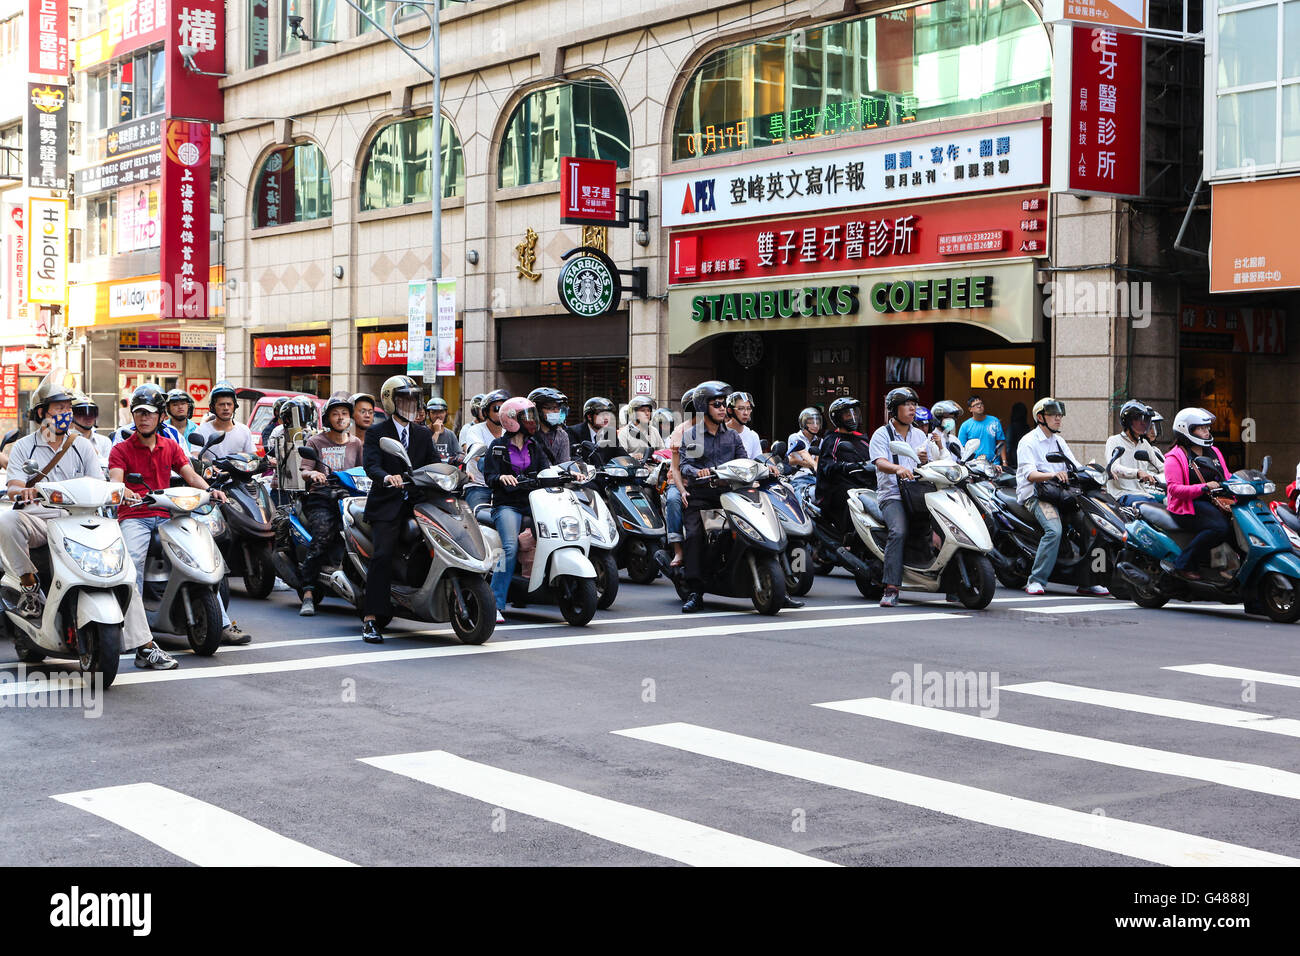 Taipeh, Taiwan: 16. Juli 2013: Rollerfahrer stoppen an einem Verkehrsknotenpunkt in Taipei City. Motorroller sind die populärste Form des Stockfoto